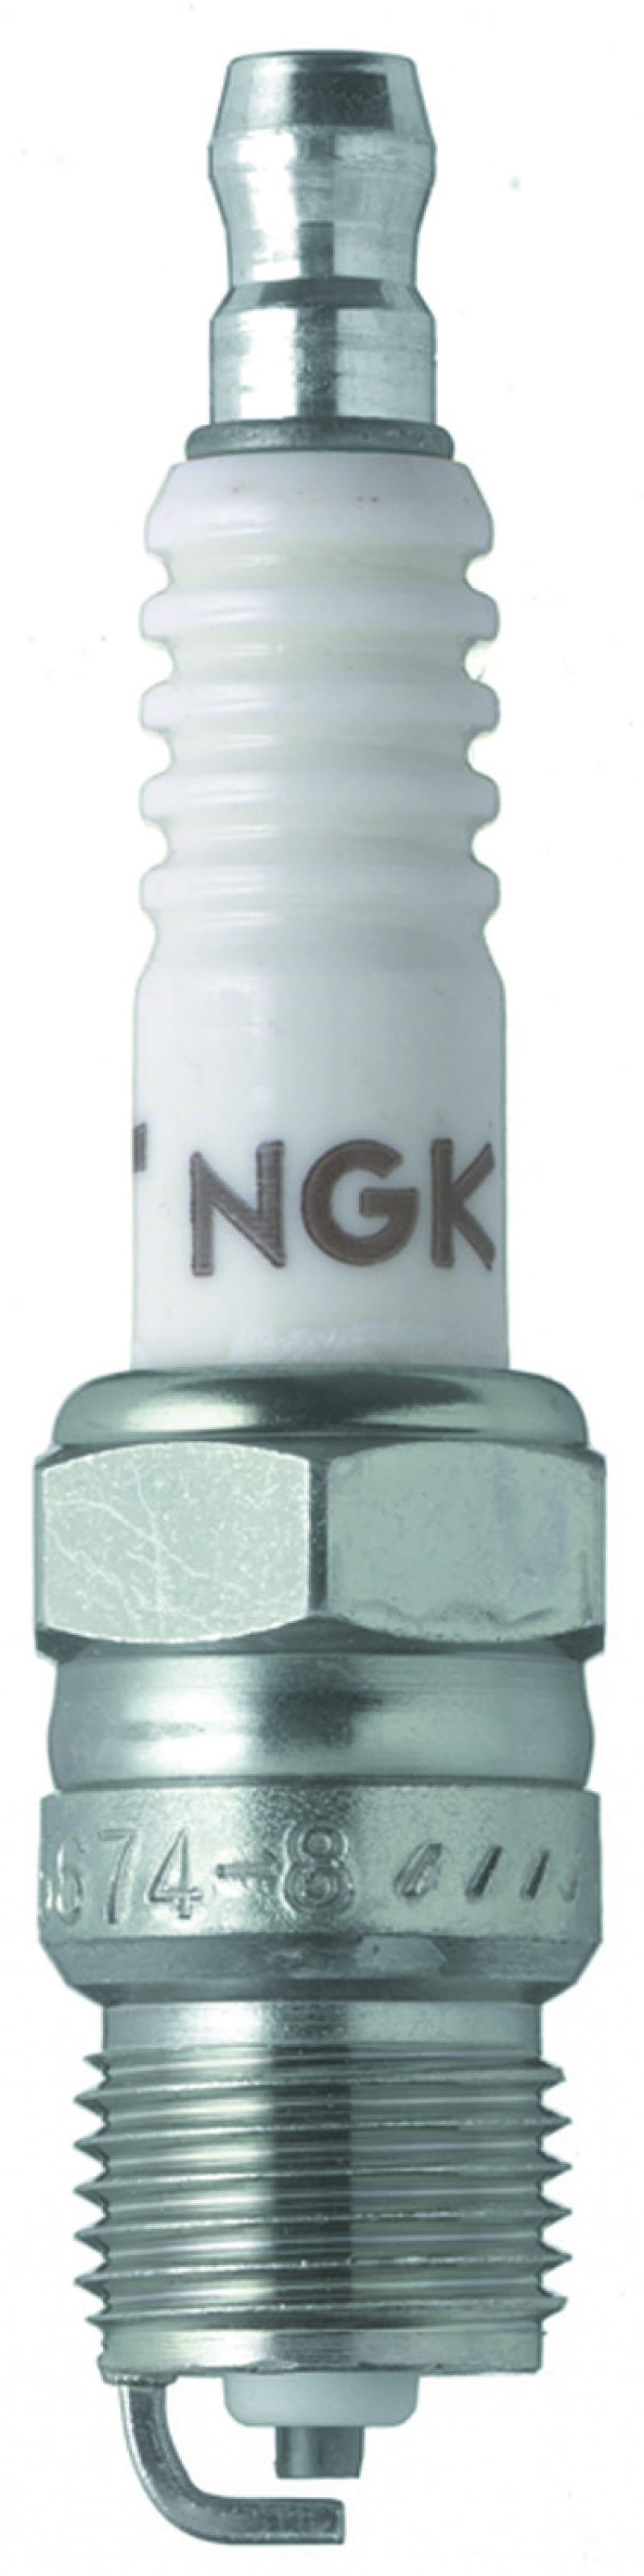 NGK Nickel Spark Plug Box of 4 (R5674-9) - 6468